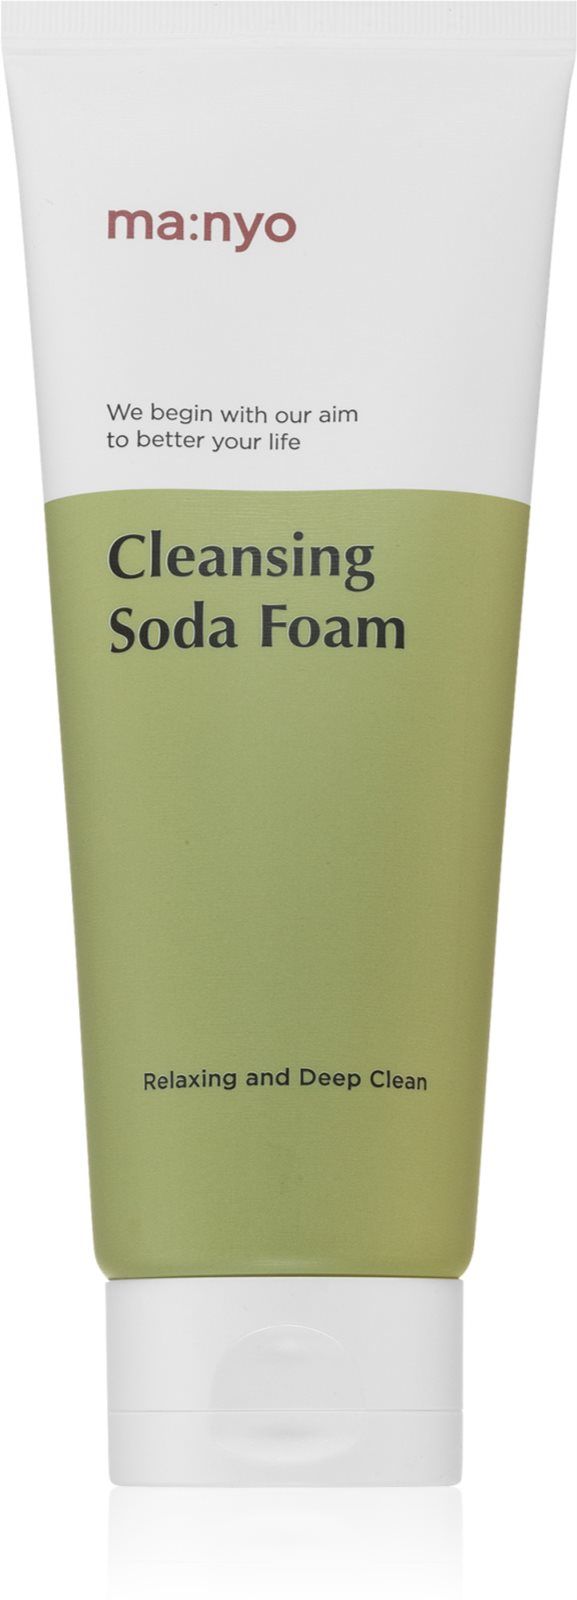 Cleansing soda foam. Manyo Cleansing Soda Foam. Manyo Soda Foam.